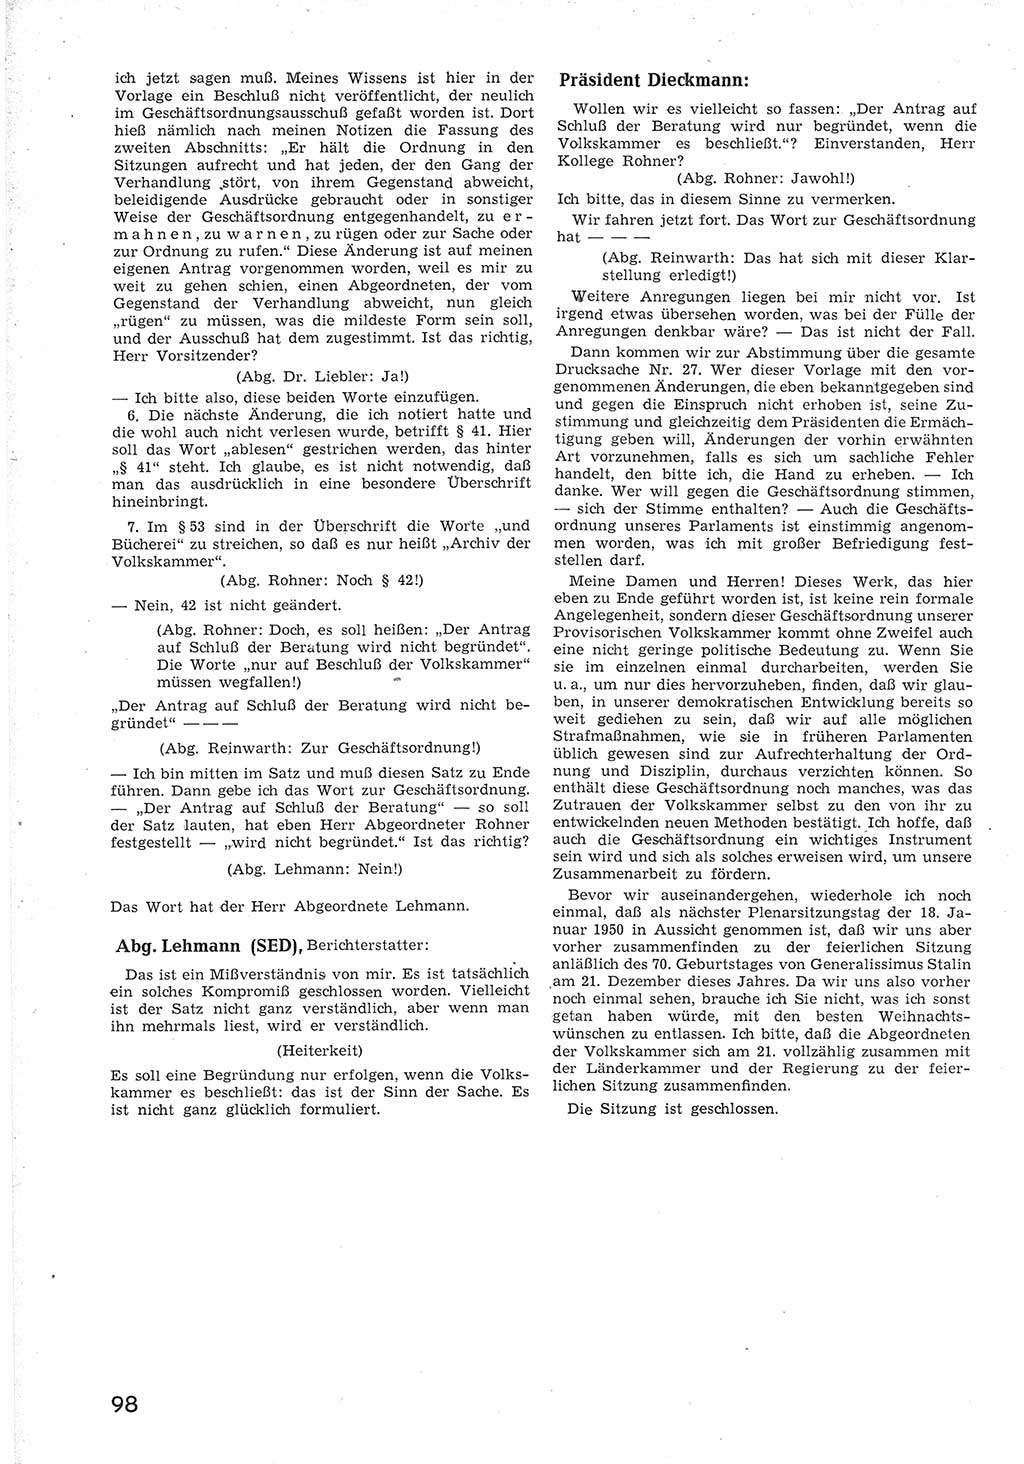 Provisorische Volkskammer (VK) der Deutschen Demokratischen Republik (DDR) 1949-1950, Dokument 110 (Prov. VK DDR 1949-1950, Dok. 110)